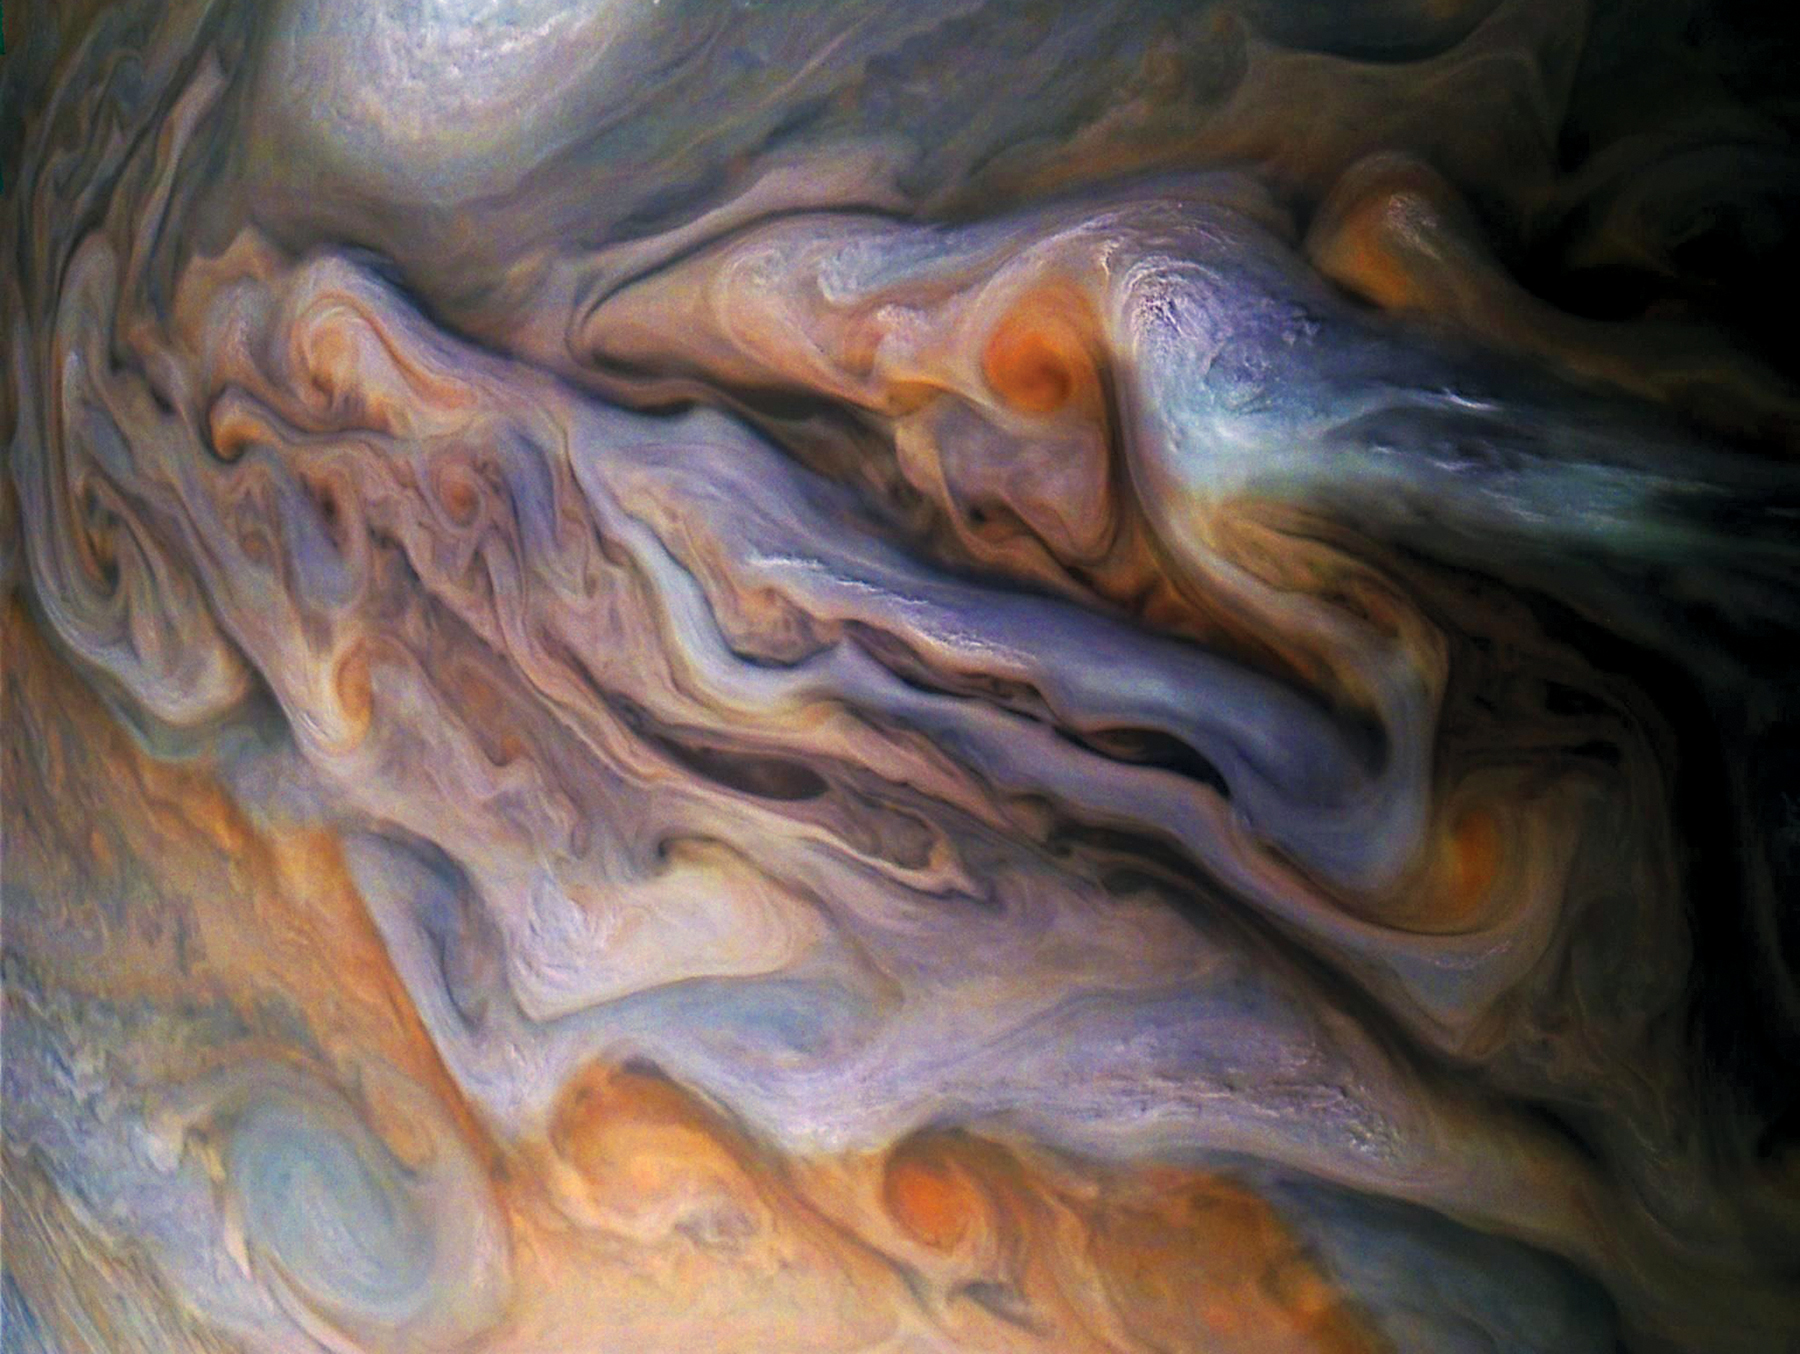 Storm vortices of Jupiter. Image Credit: NASA/JPL-Caltech/SwRI/MSSS/Gerald Eichstädt/Seán Doran (Click image to download hi-res version)